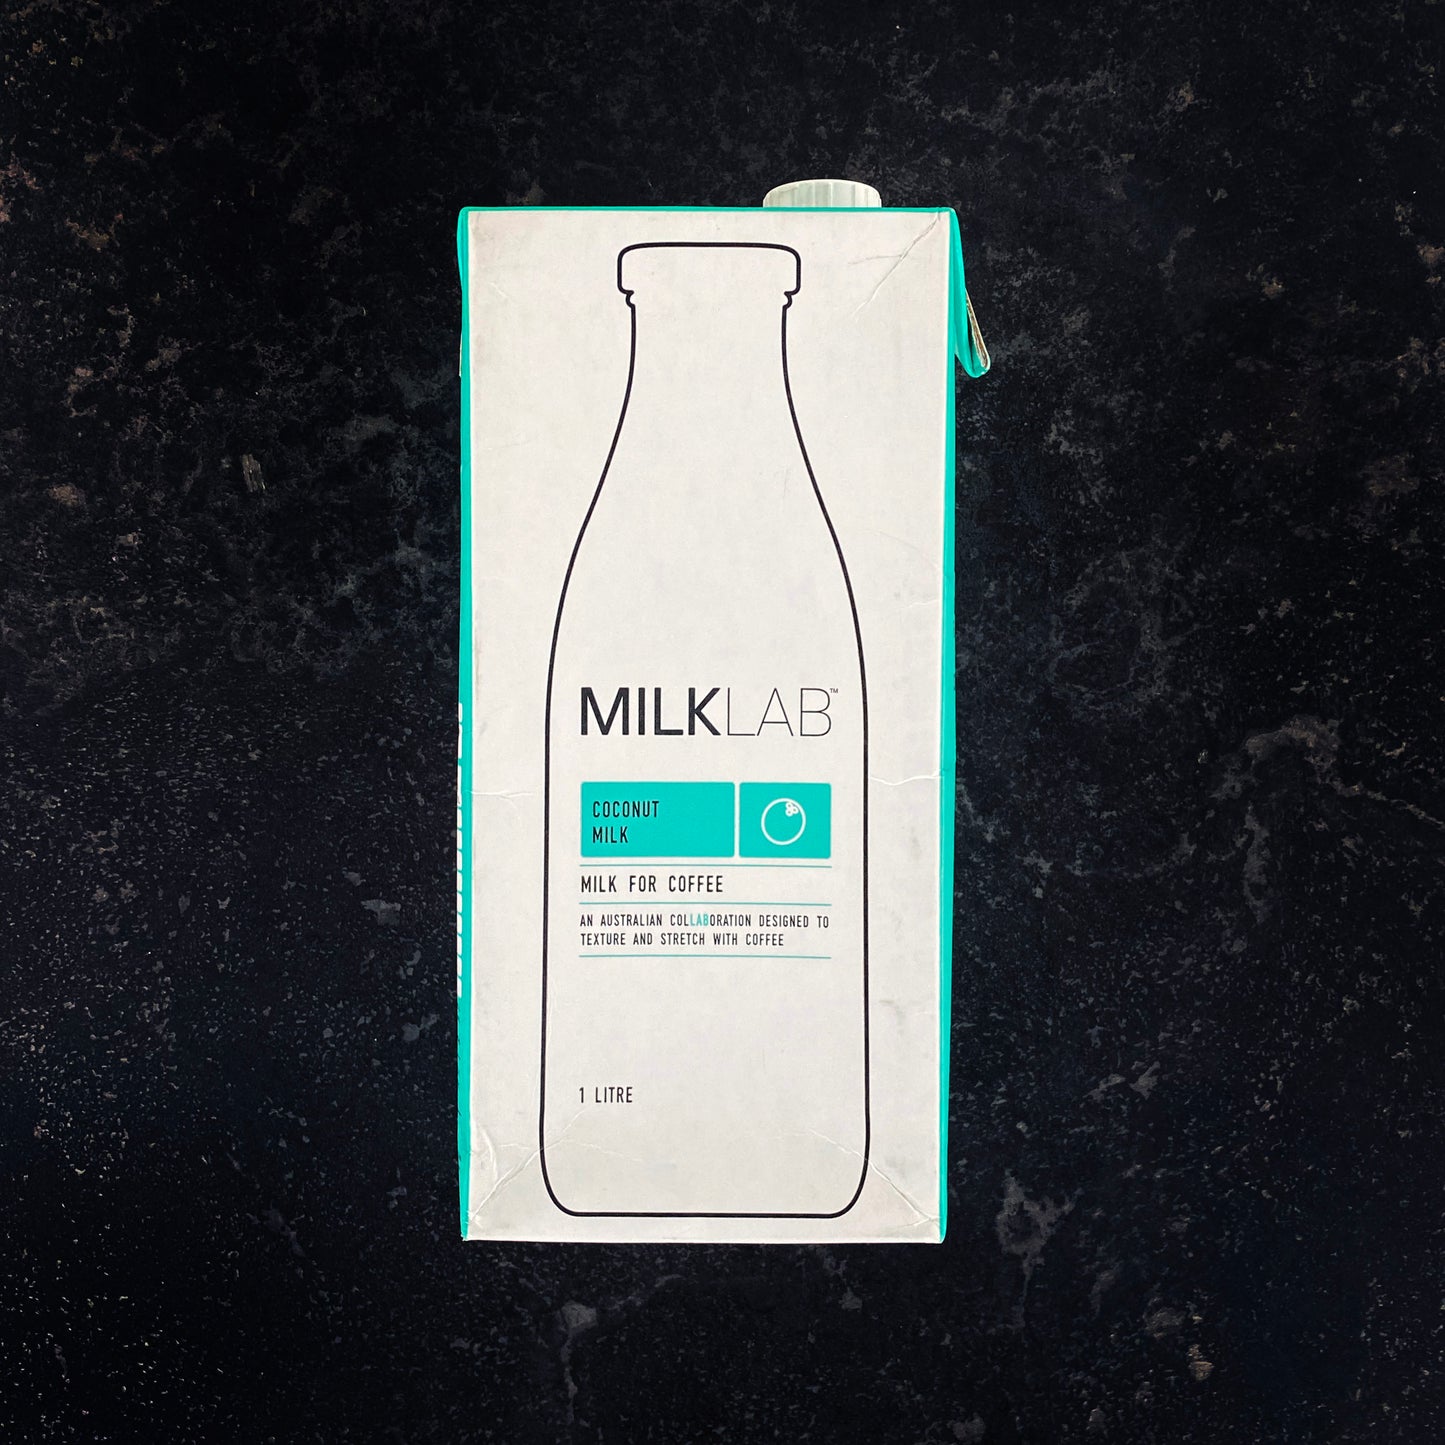 MilkLab Coconut Milk Barista 1 Litre Carton